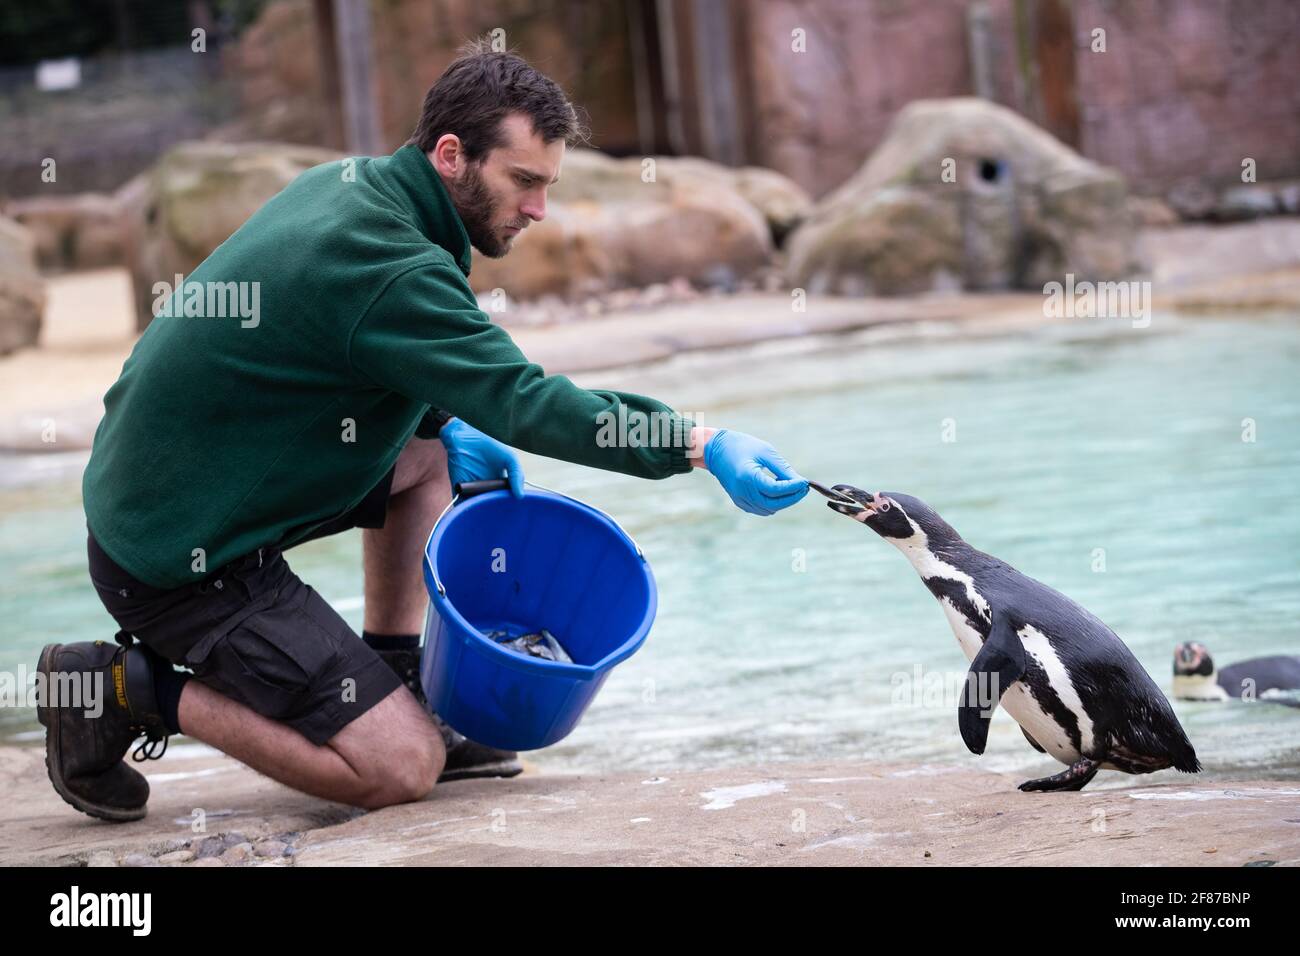 Un gardien nourrit un pingouin avant la réouverture du zoo de Londres à Regent's Park, Londres, alors que l'Angleterre repart vers la normalité avec l'assouplissement supplémentaire des restrictions de verrouillage. Date de la photo: Lundi 12 avril 2021. Banque D'Images